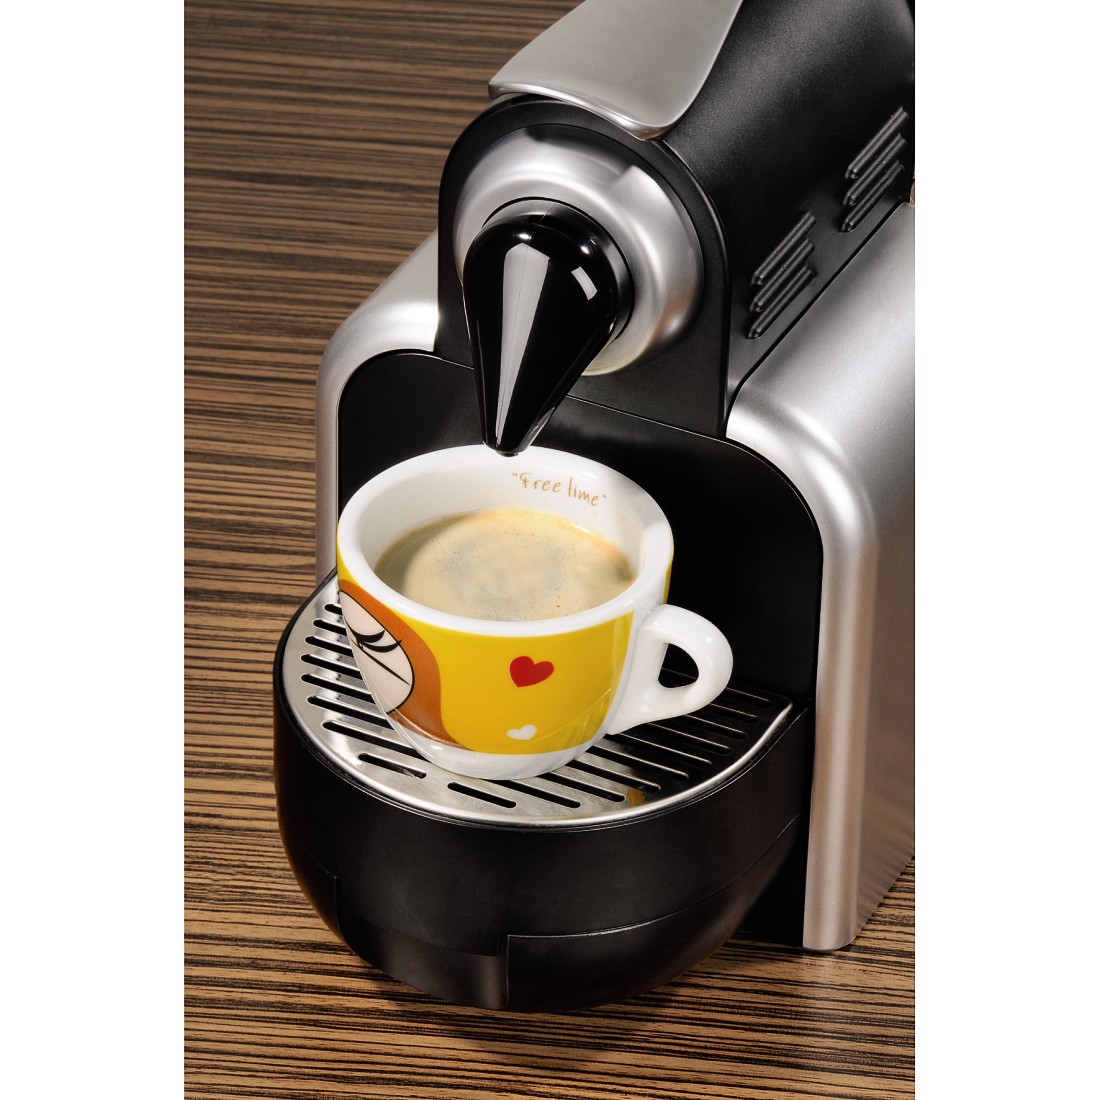 awx4 Druckfähige Anwendung 4 - Xavax, Espresso-Kapsel Coffeeduck für Nespresso-Maschinen